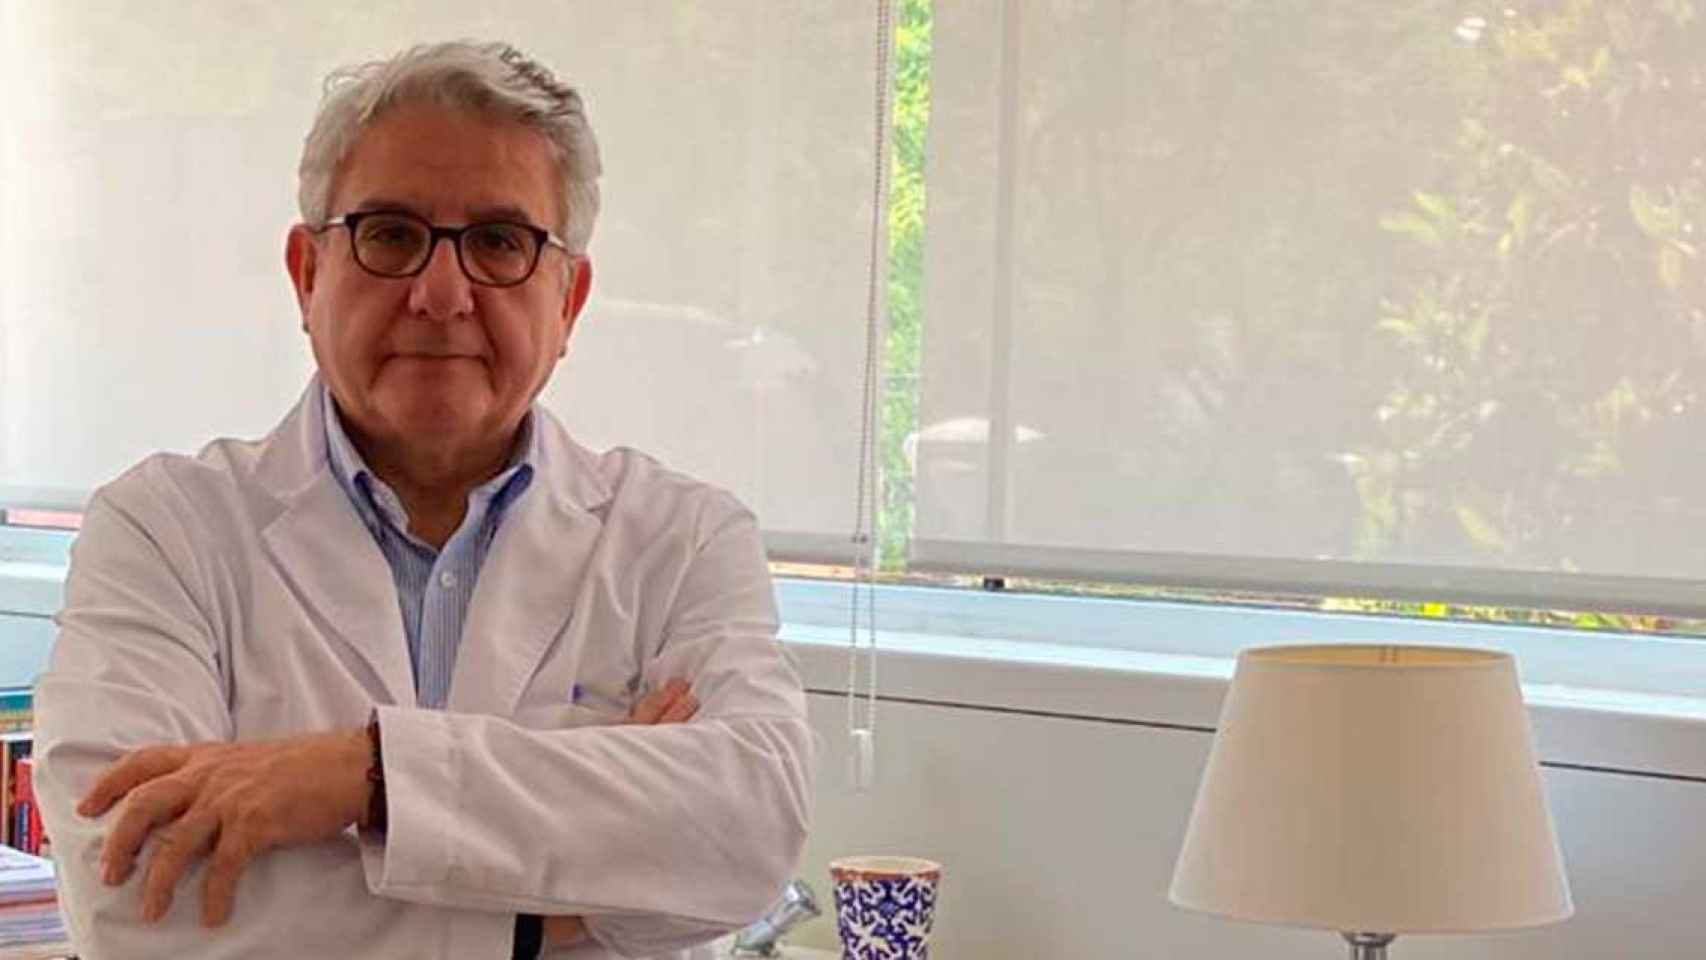 Eduardo Moreno, jefe del Departamento de Medicina Clínica de la Clínica Corachán, en la entrevista con 'Crónica Global'